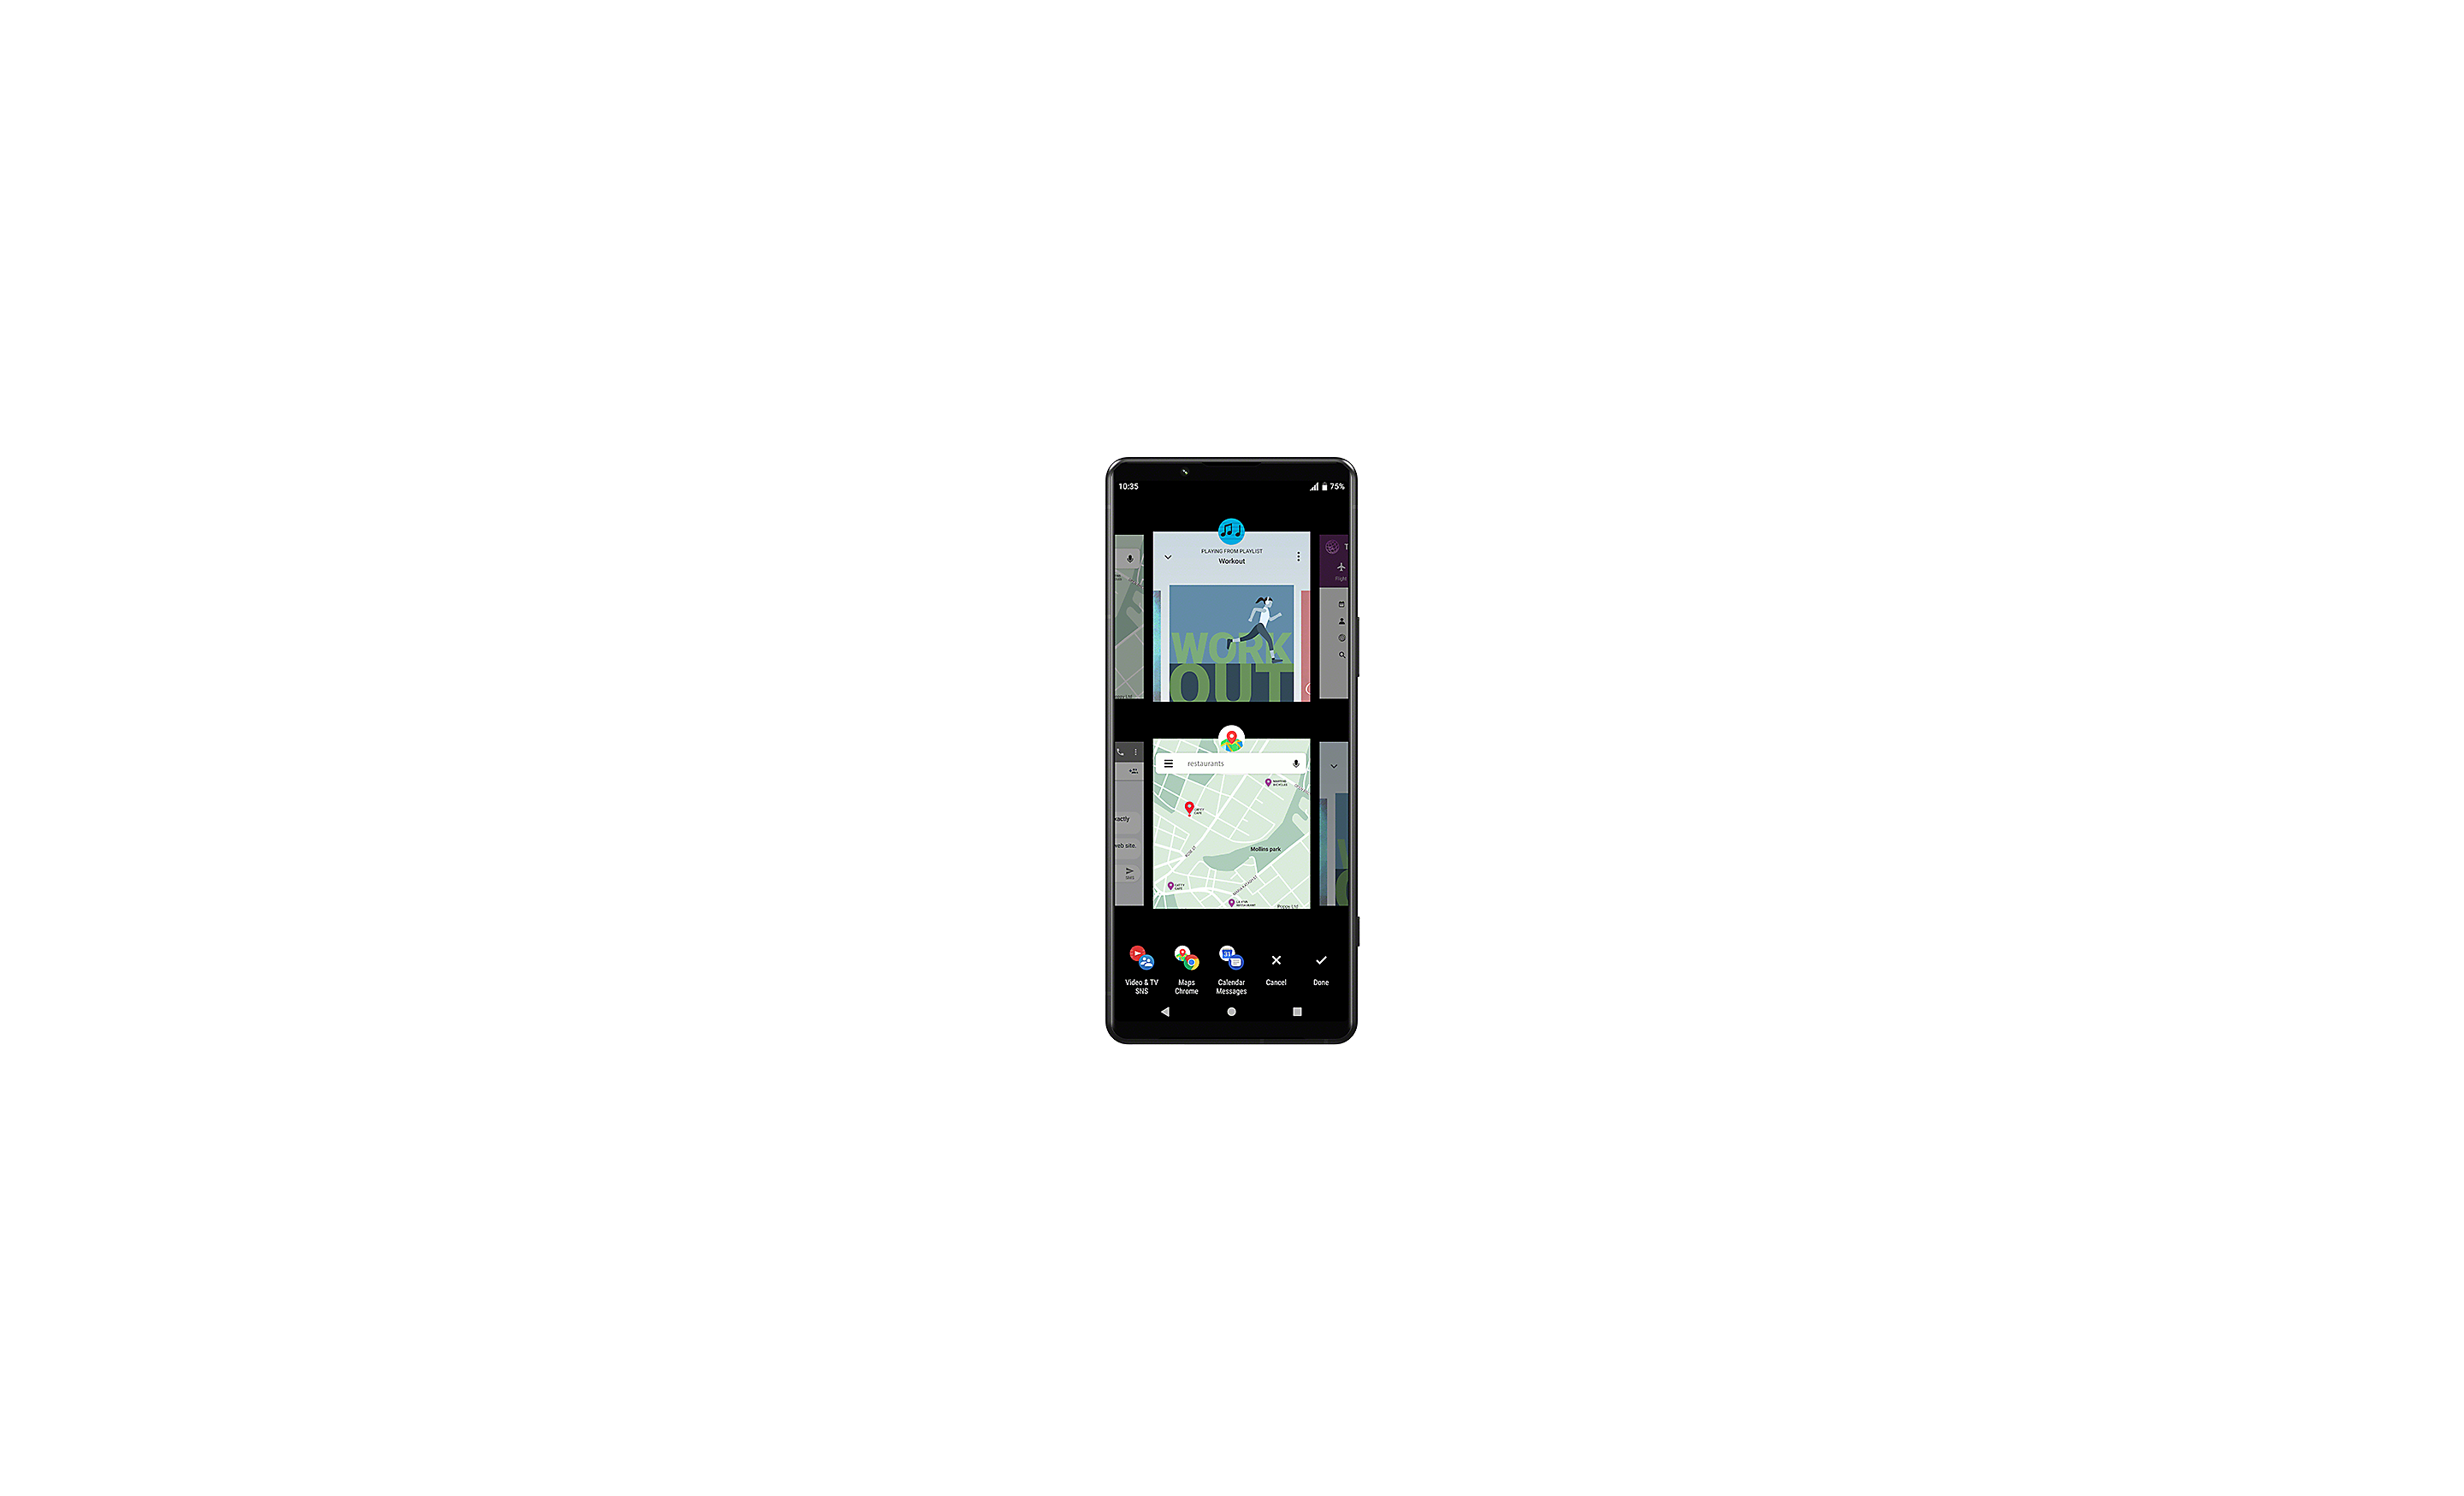 Xperia pametni telefon, na zaslonu je prikazano korisničko sučelje alata za prebacivanje između više prozora